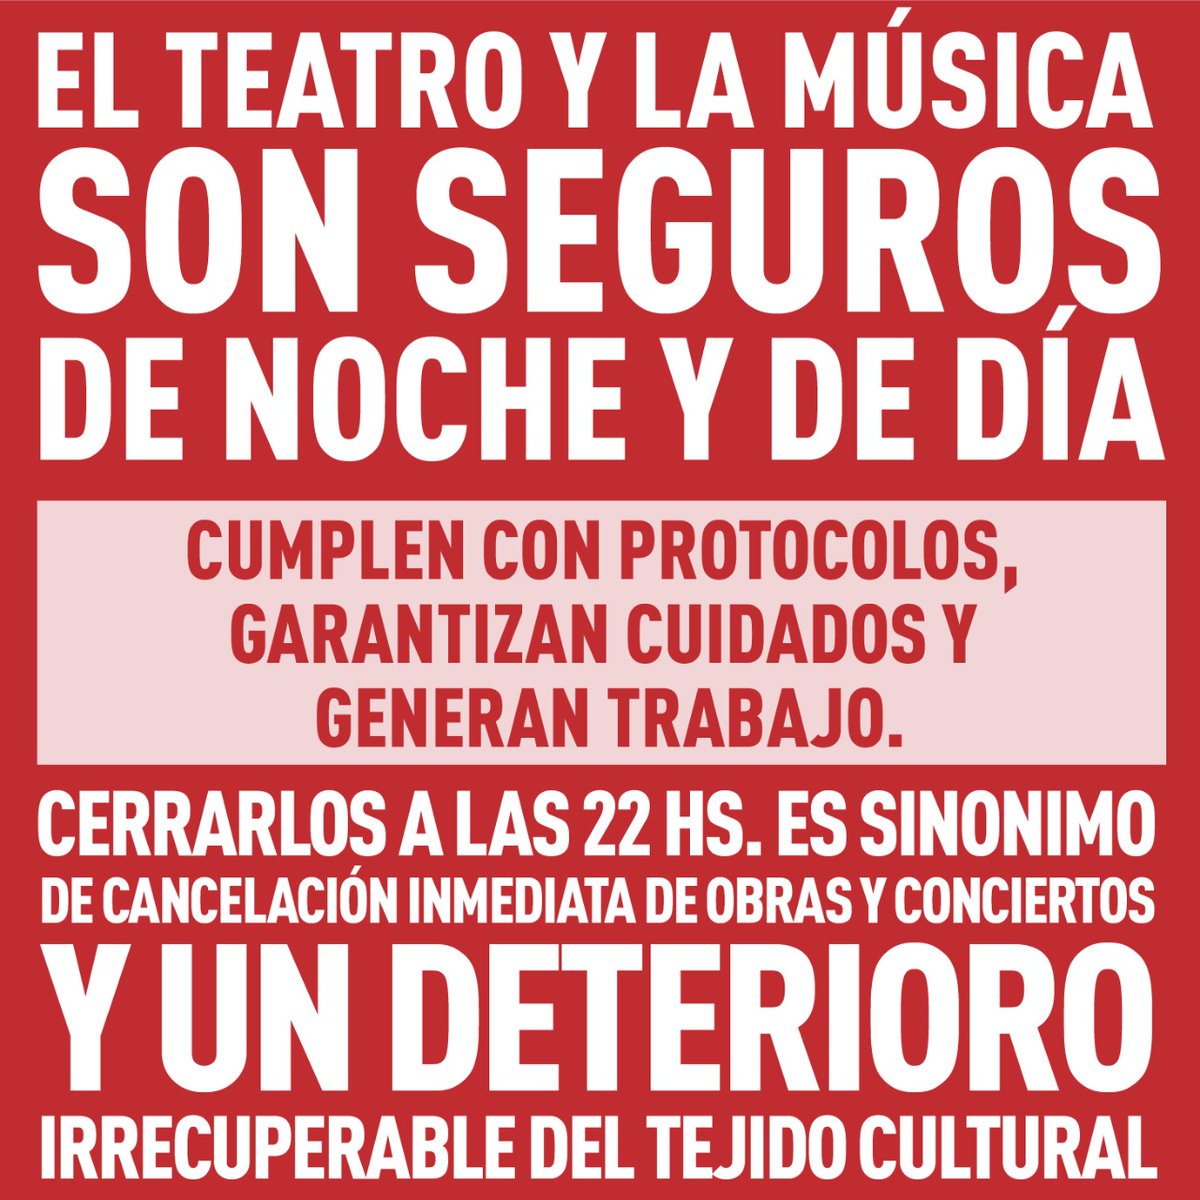 La Música y el Teatro son seguros de noche y de día #ElTeatroyLaMusicaSonSeguros

#ElTeatroEsSeguro #SalvemosLaMusicaEnVivo #QueLaMusicaNoPare